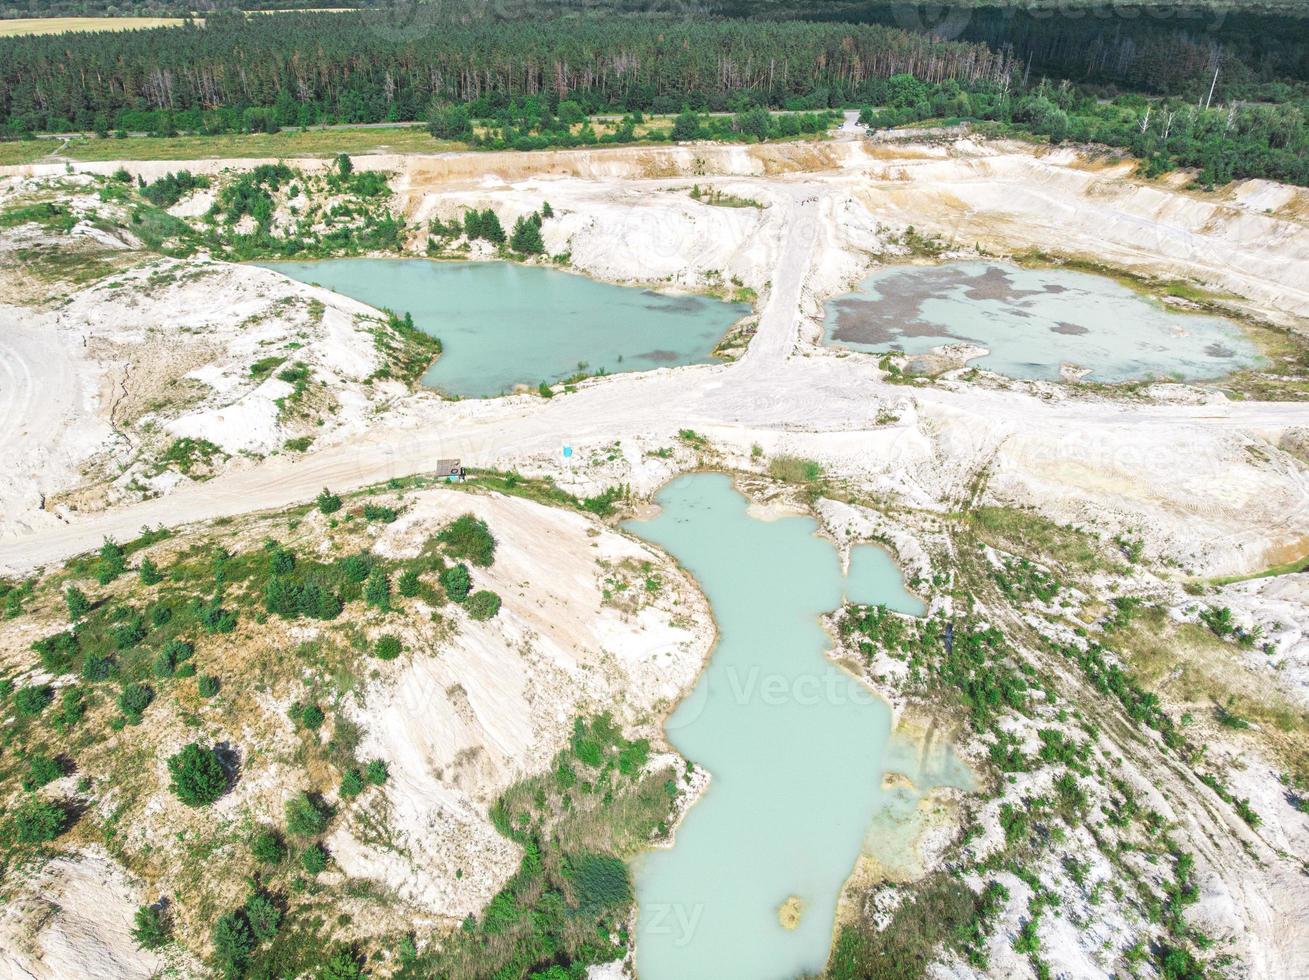 Drone ver en una cantera de caolín inundada de agua turquesa y orilla blanca foto